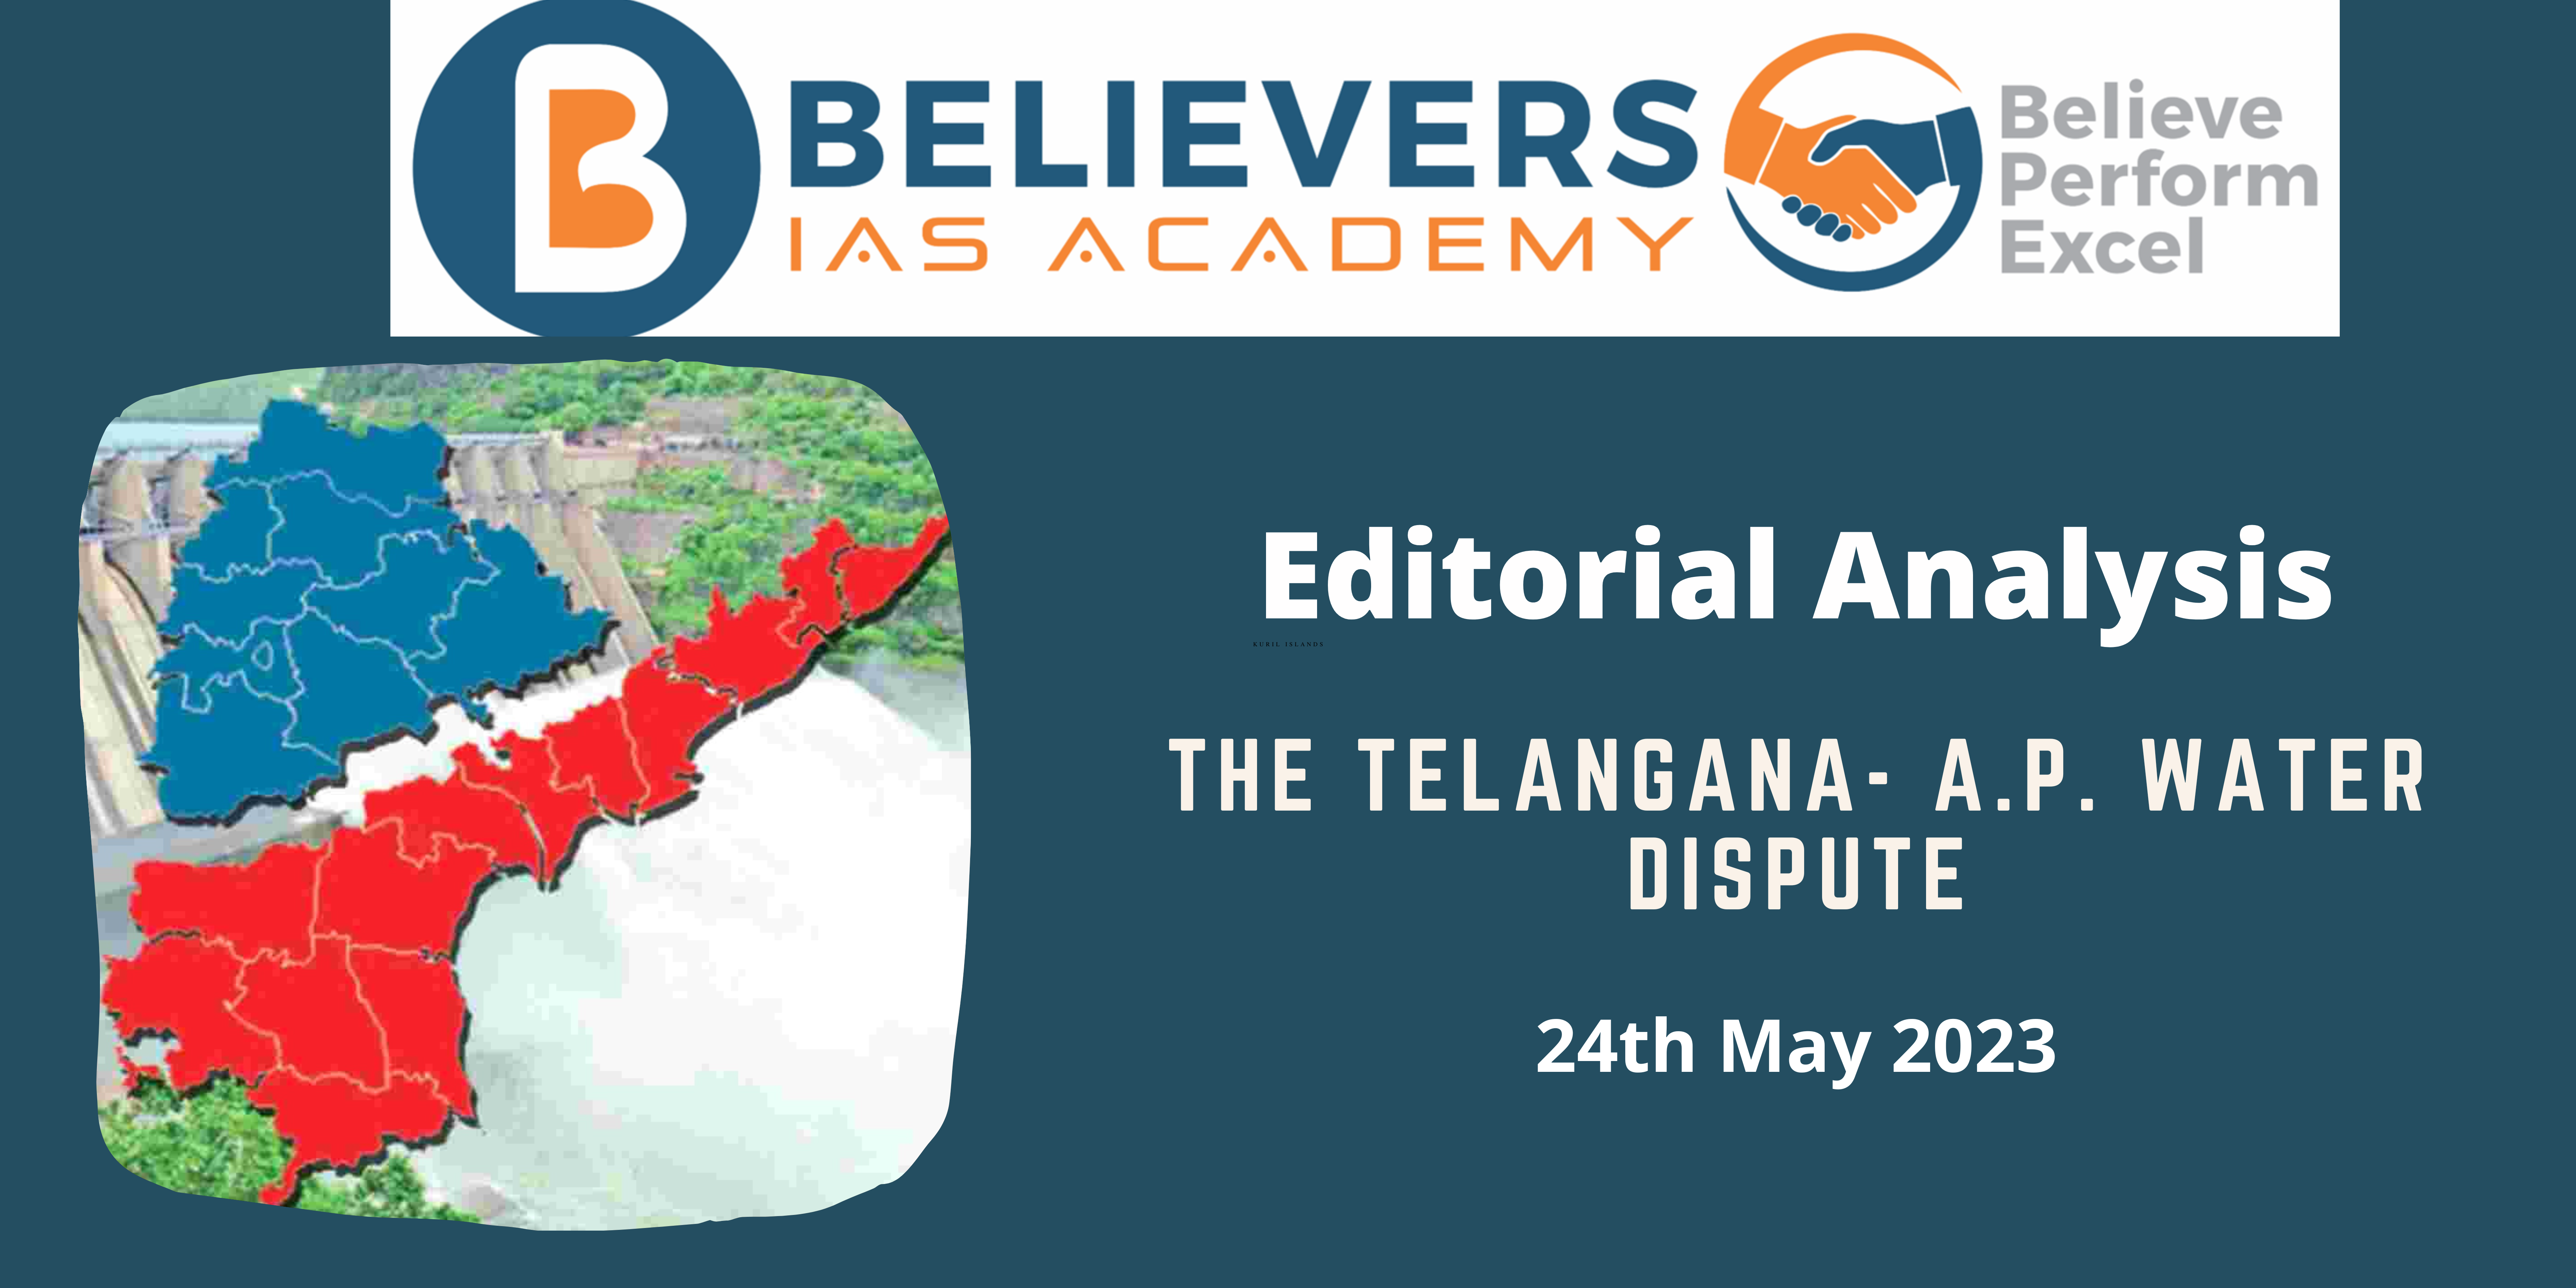 The Telangana- A.P. Water Dispute